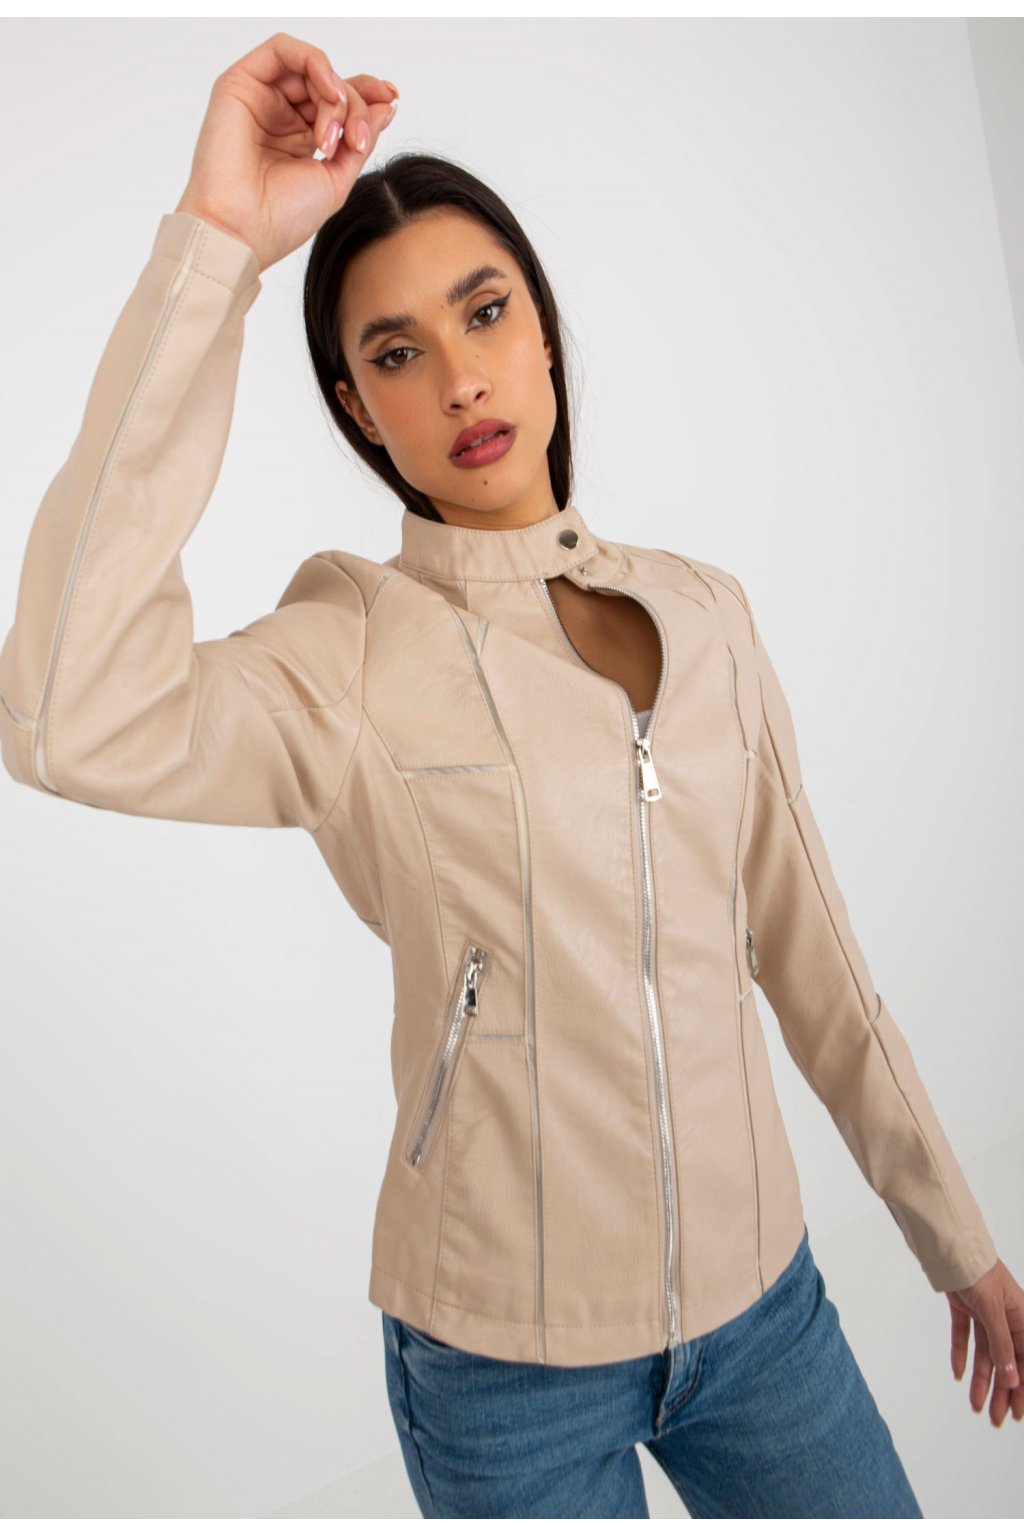 Béžová dámská koženková bunda | FASHIONSUGAR e-shop